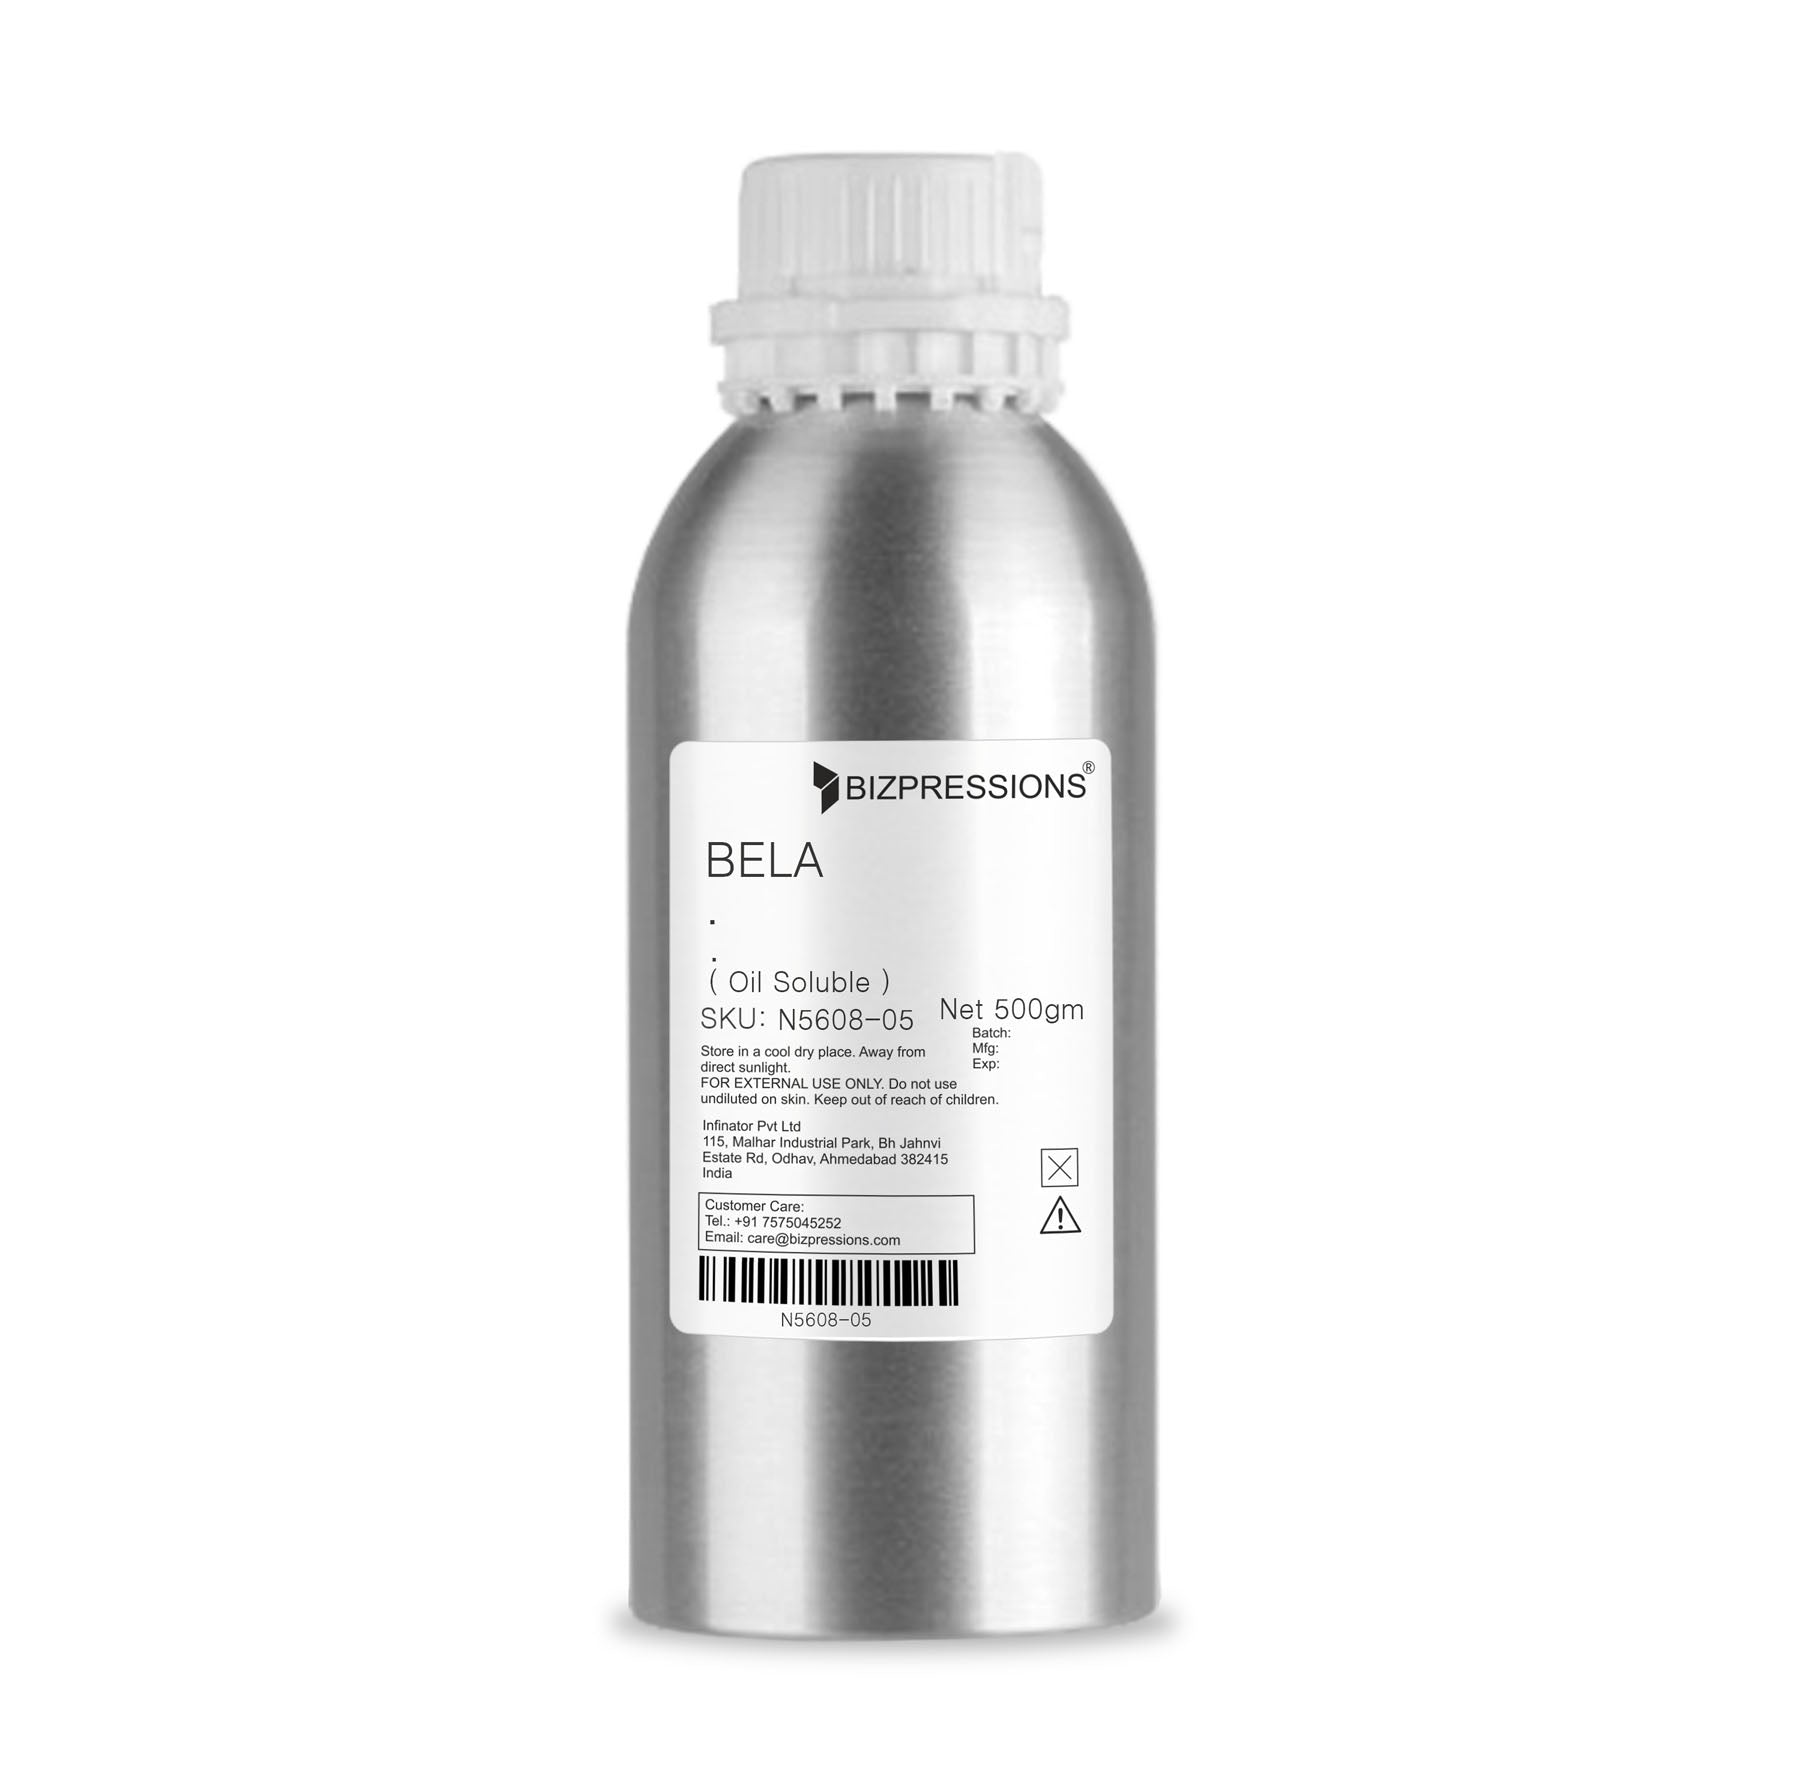 BELA - Fragrance ( Oil Soluble ) - 500 gm